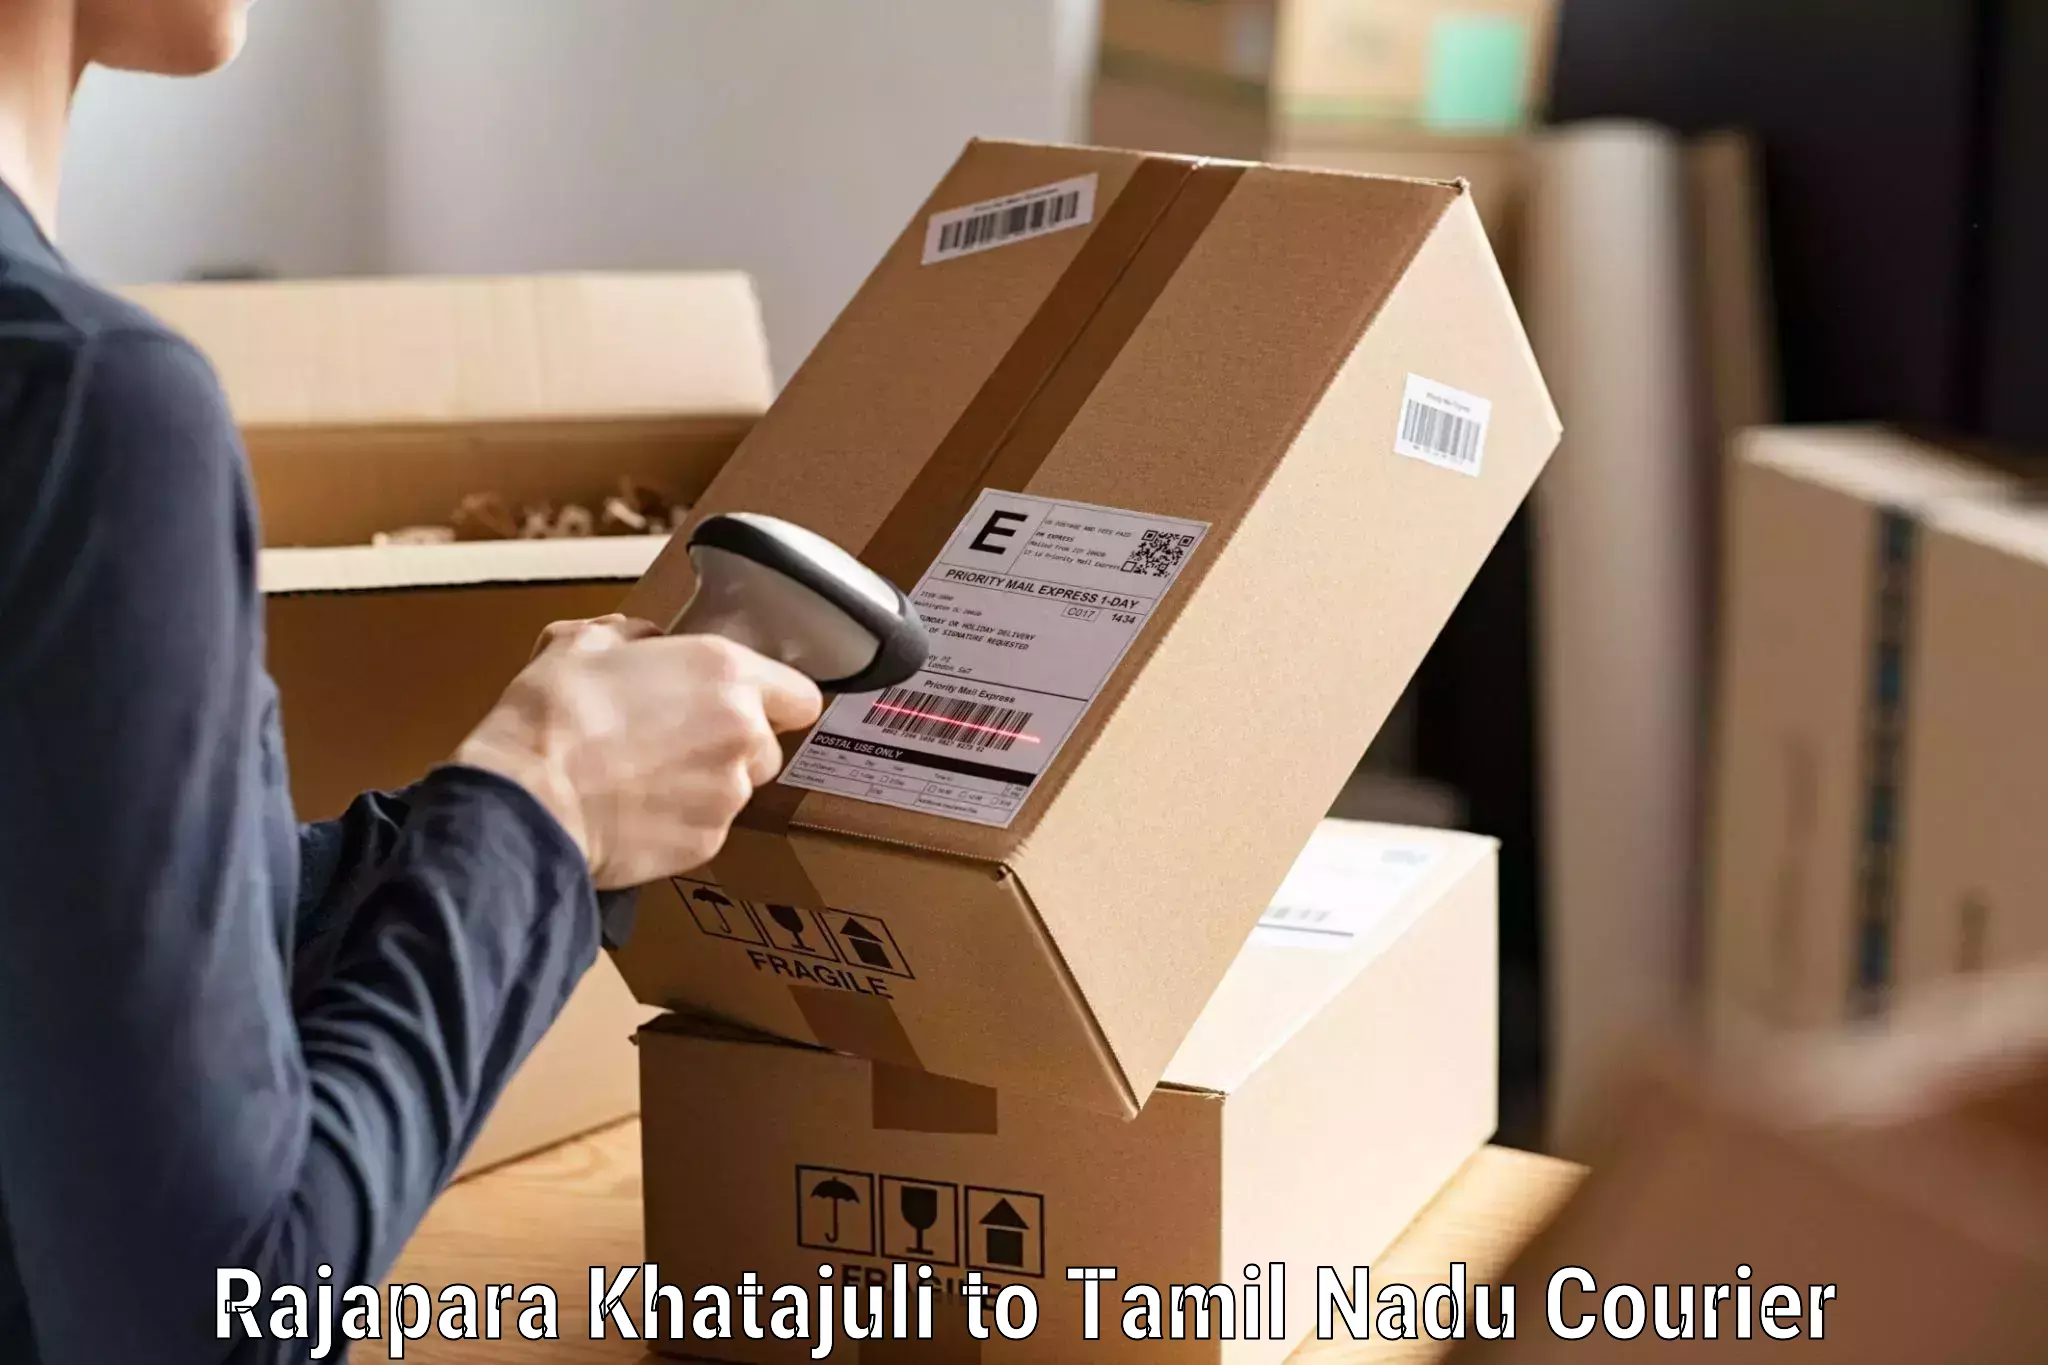 Efficient parcel service Rajapara Khatajuli to Virudhunagar